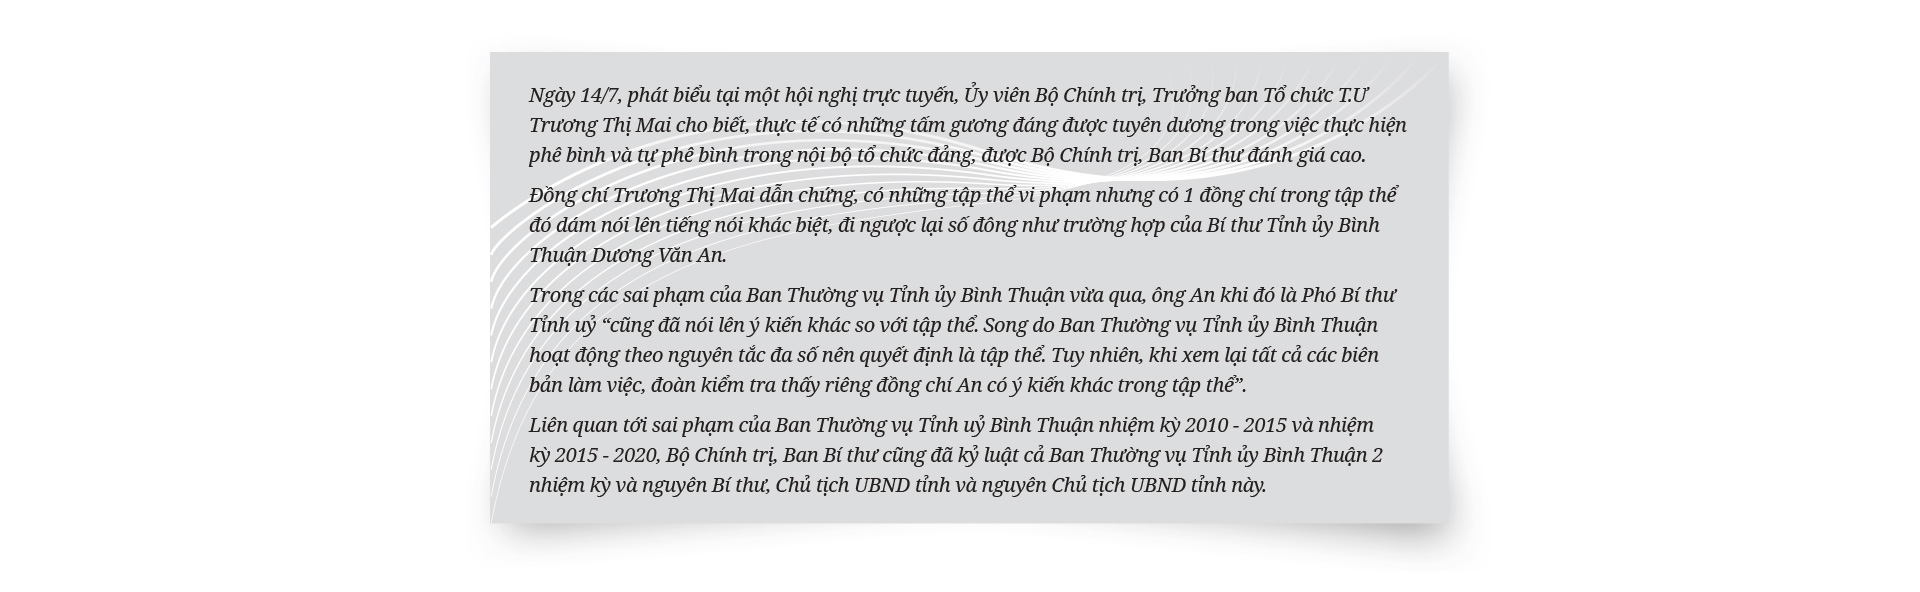 Bí thư Dương Văn An và câu chuyện hoá giải điểm nghẽn ở Bình Thuận - Ảnh 17.